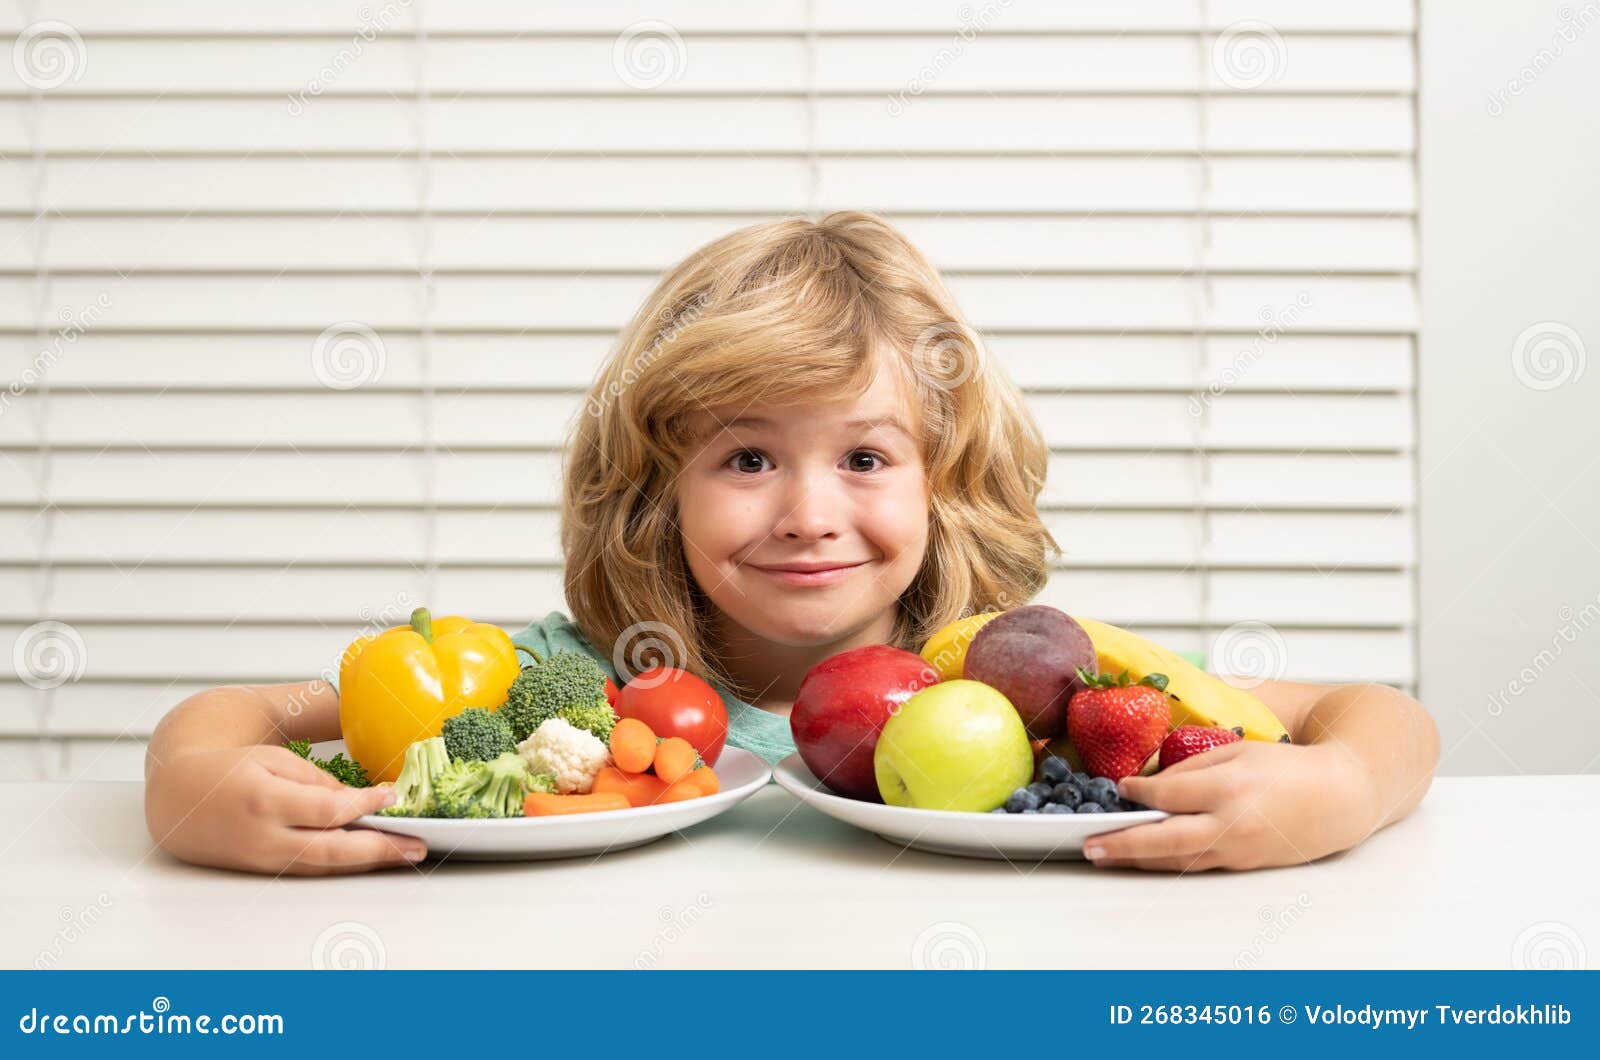 Frutas Y Hortalizas. Niño Que Come Alimentos Saludables. Desayuno